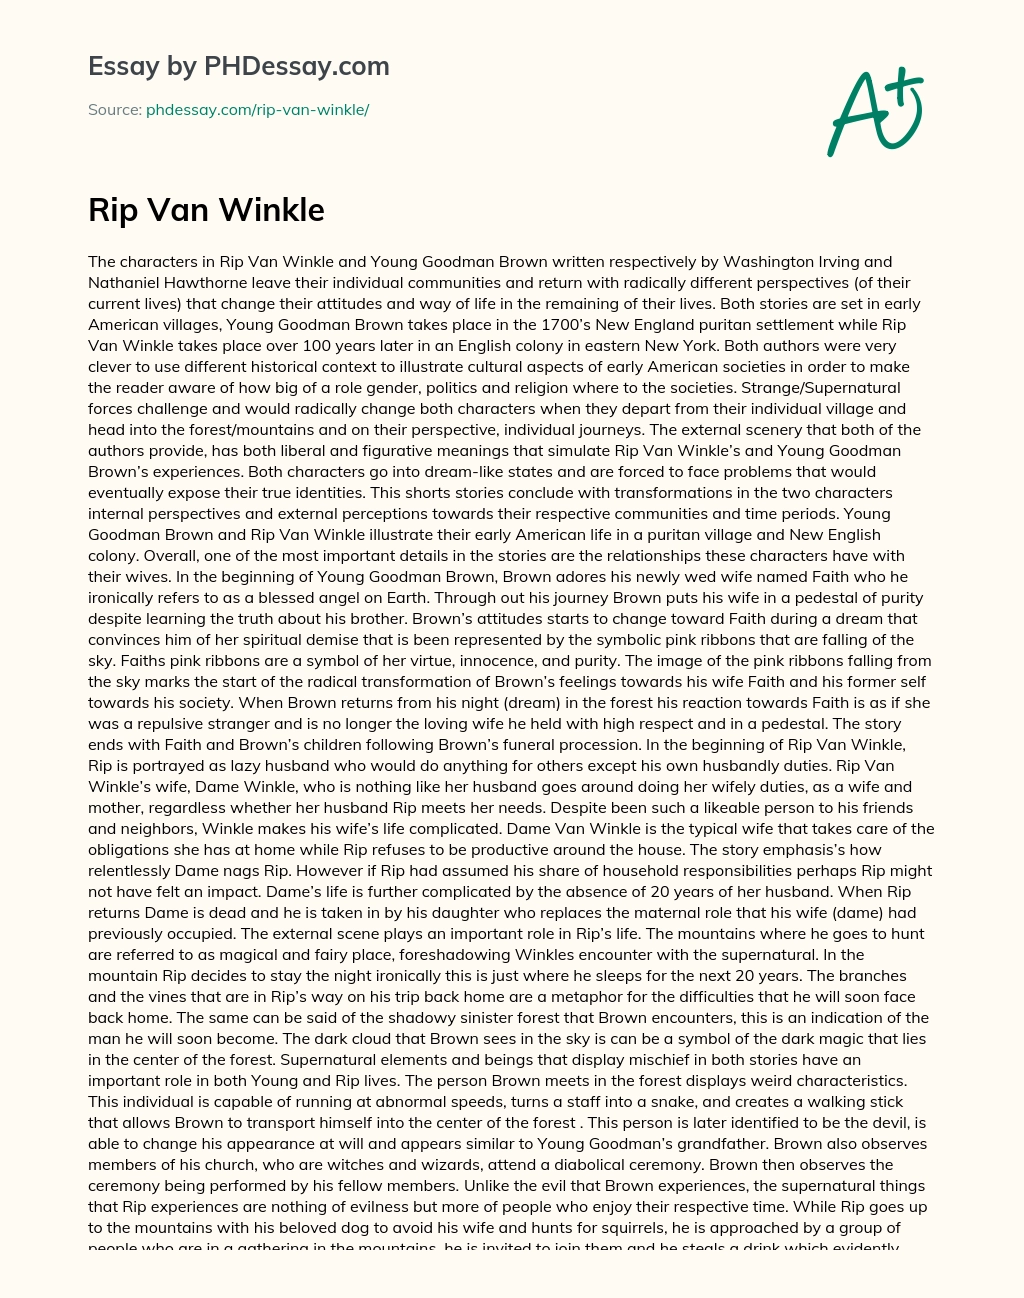 Rip Van Winkle essay